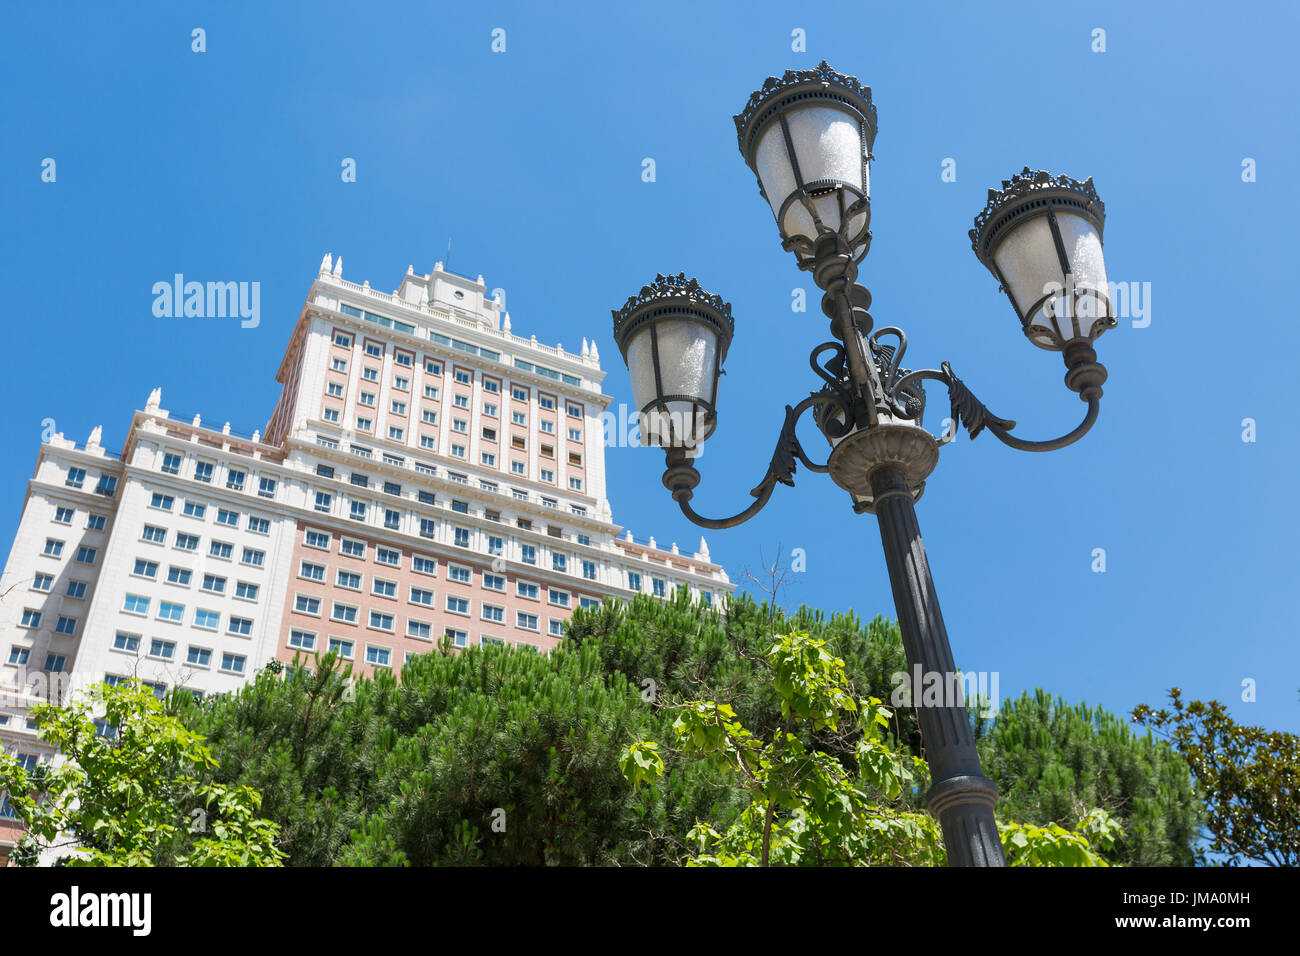 Alt, reich verzierten Straßenbeleuchtung in Plaza de España, Madrid, Spanien Stockfoto